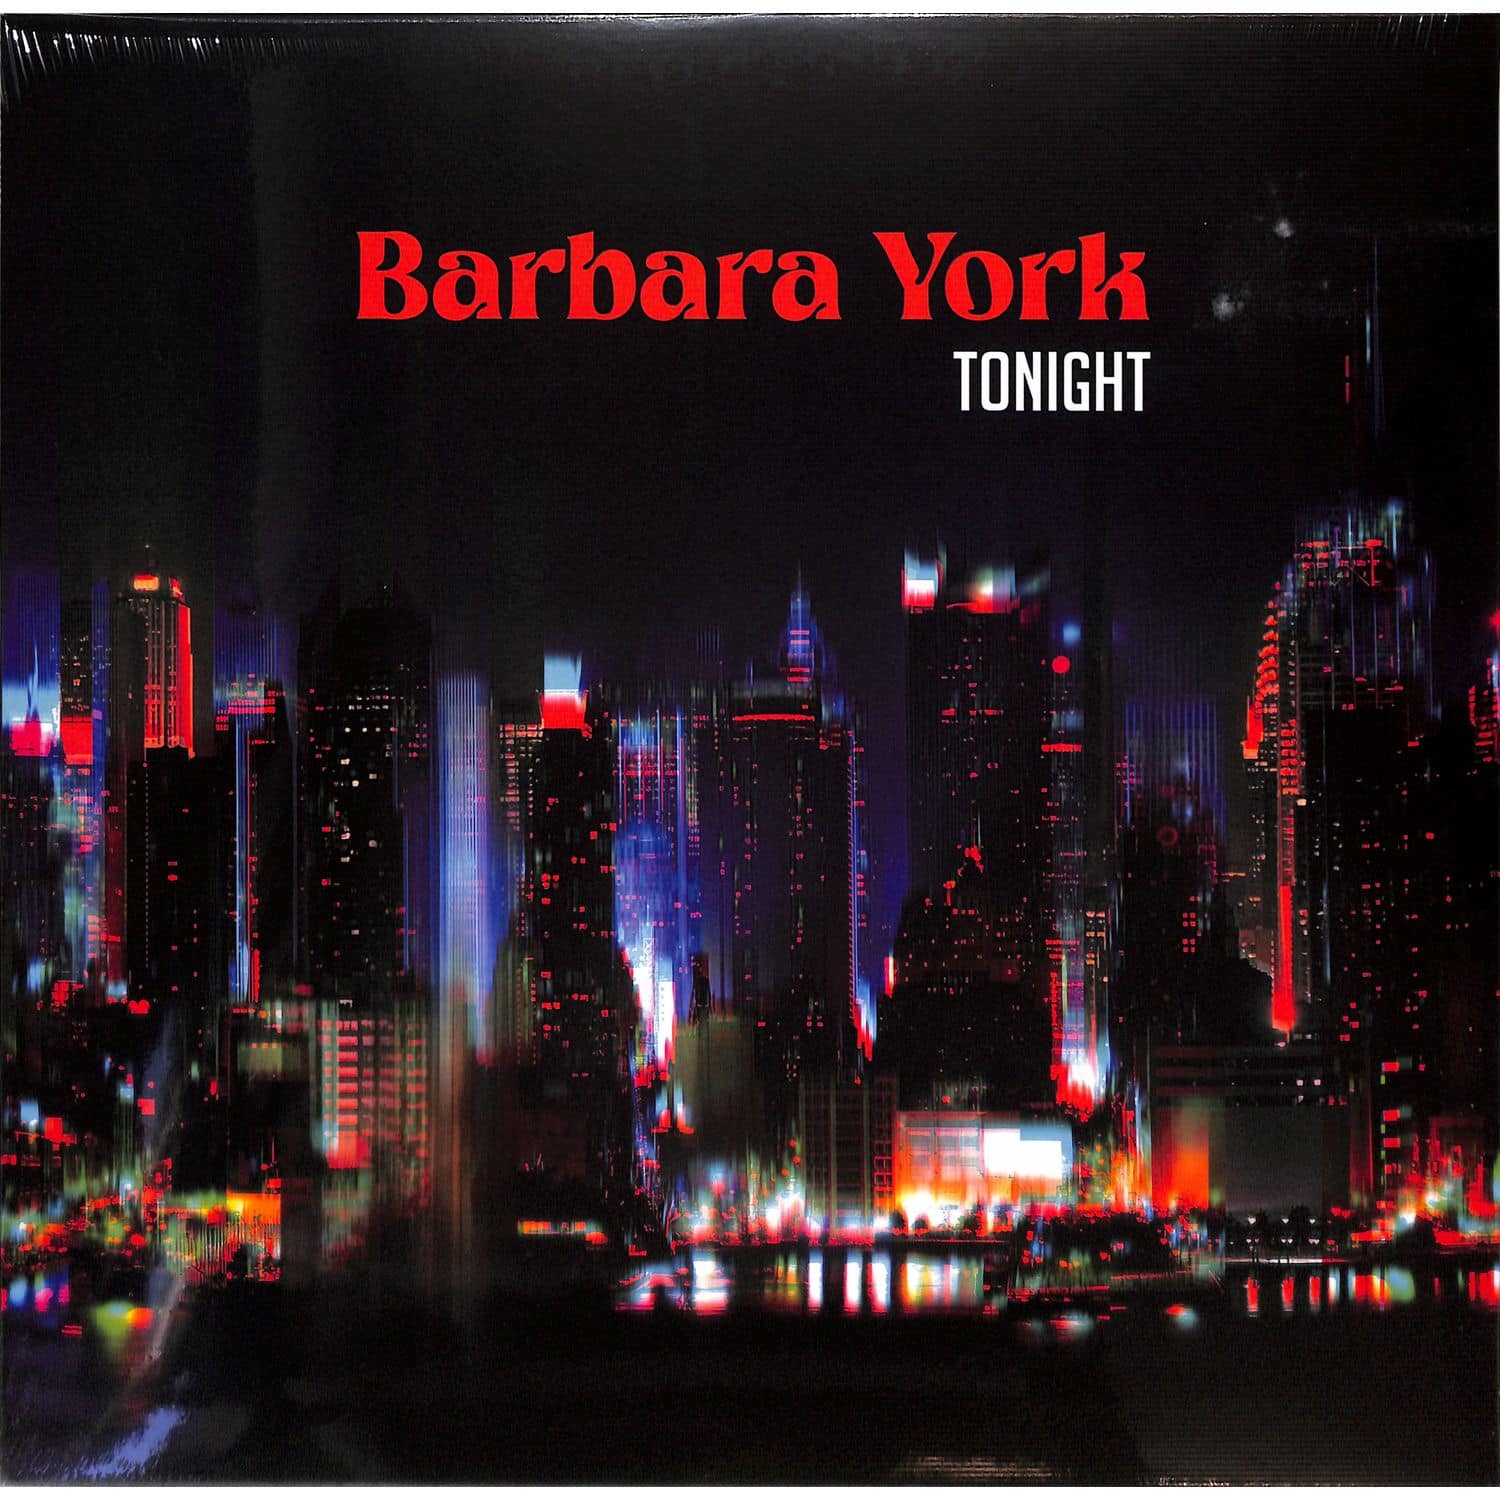 Barbara York - TONIGHT